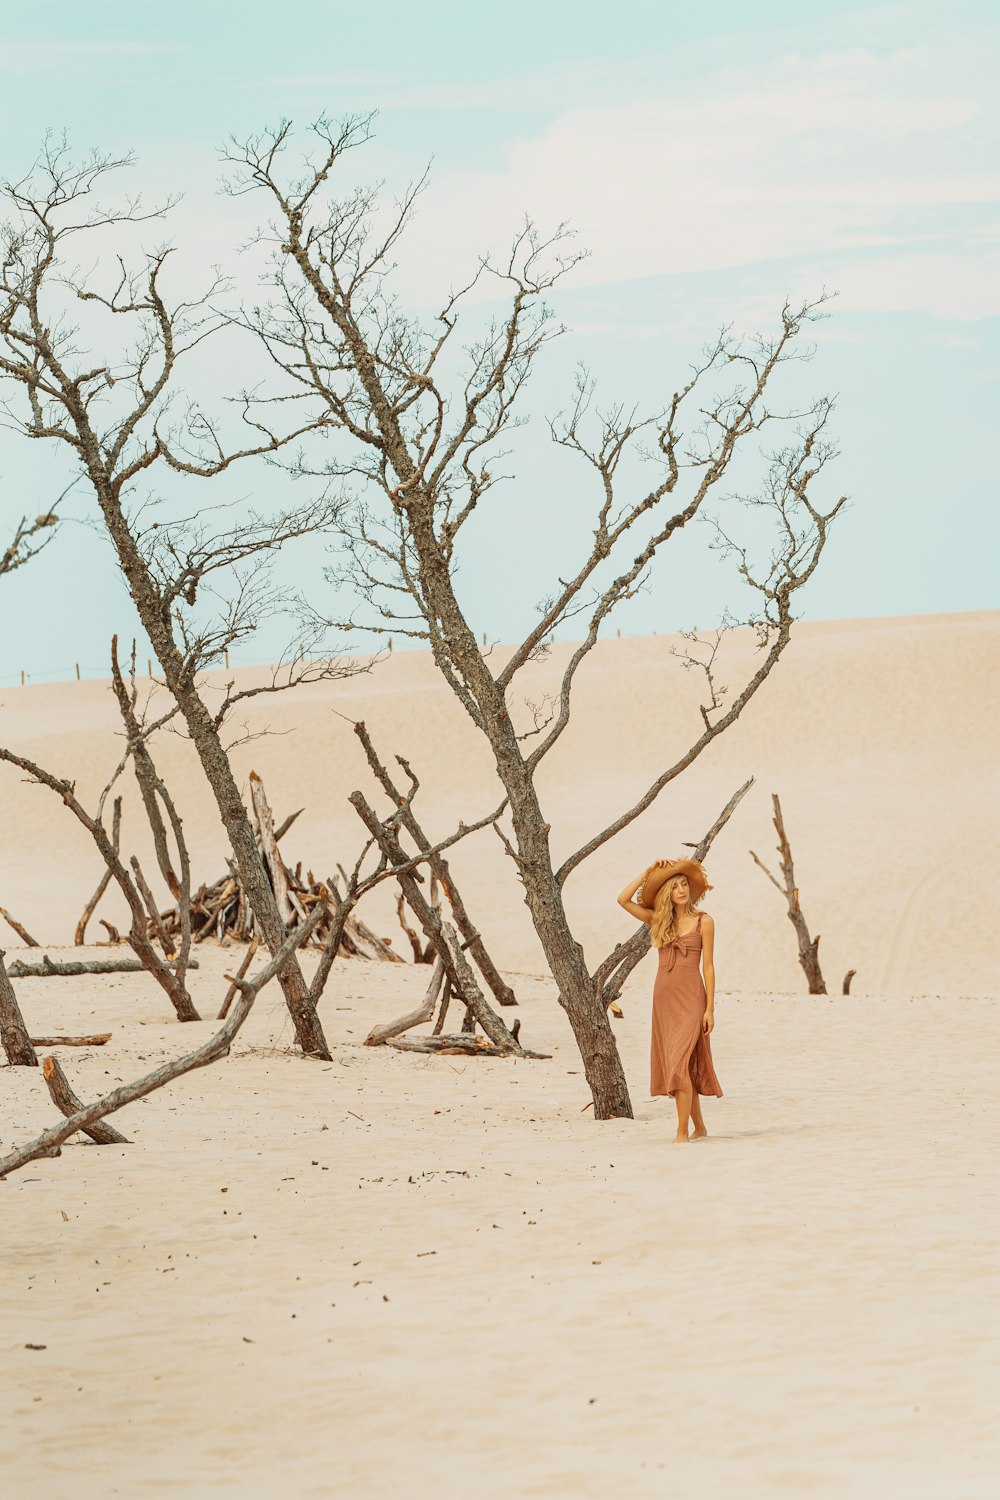 donna in vestito marrone in piedi accanto all'albero nudo durante il giorno